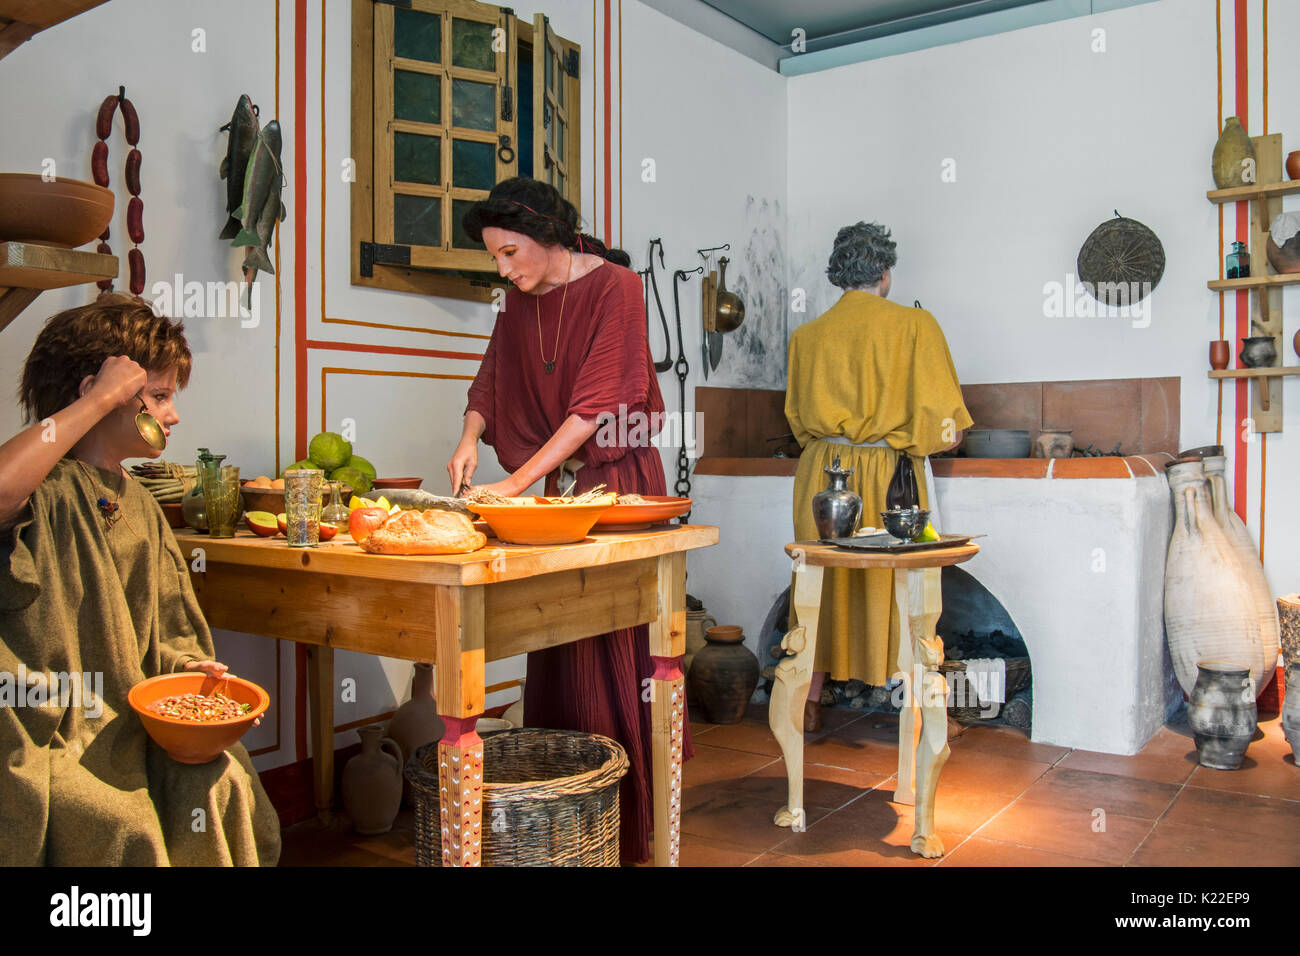 Diorama grandeur montrant les chiffres décrivant la vie quotidienne dans la cuisine d'une villa romaine, Echternach, Luxembourg Banque D'Images